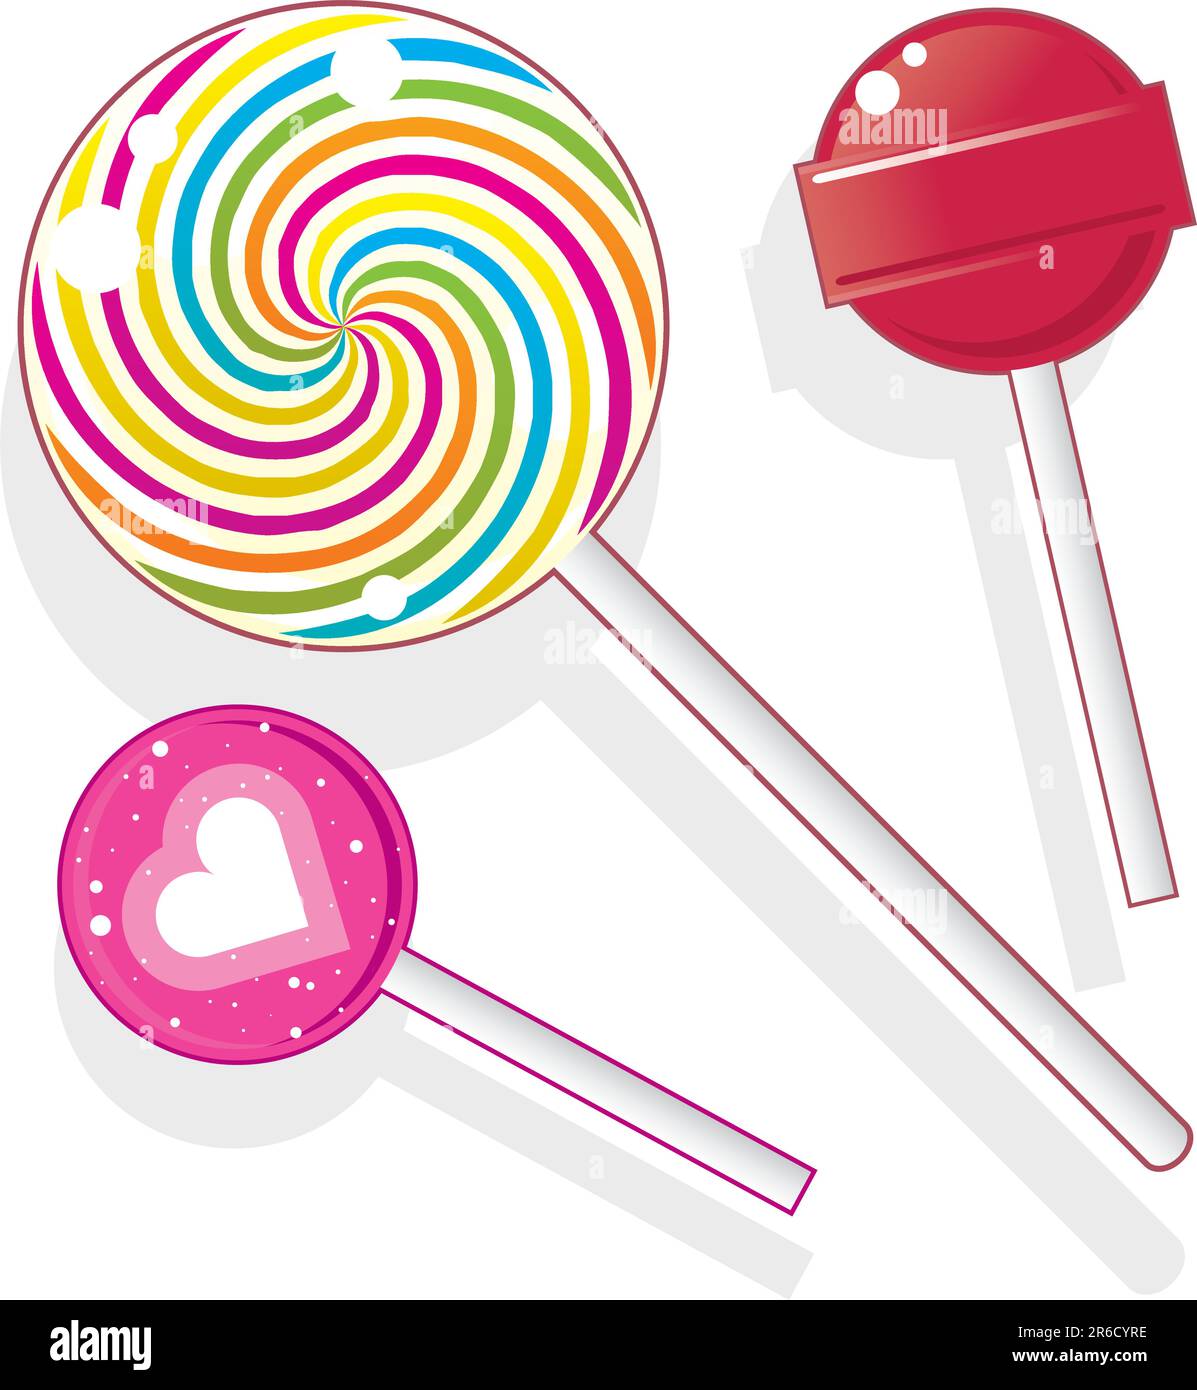 Lecca lecca e stupidi. Il set di caramelle vettoriali include lolly Pops sferici e Swirl pop rotondo. Illustrazione Vettoriale